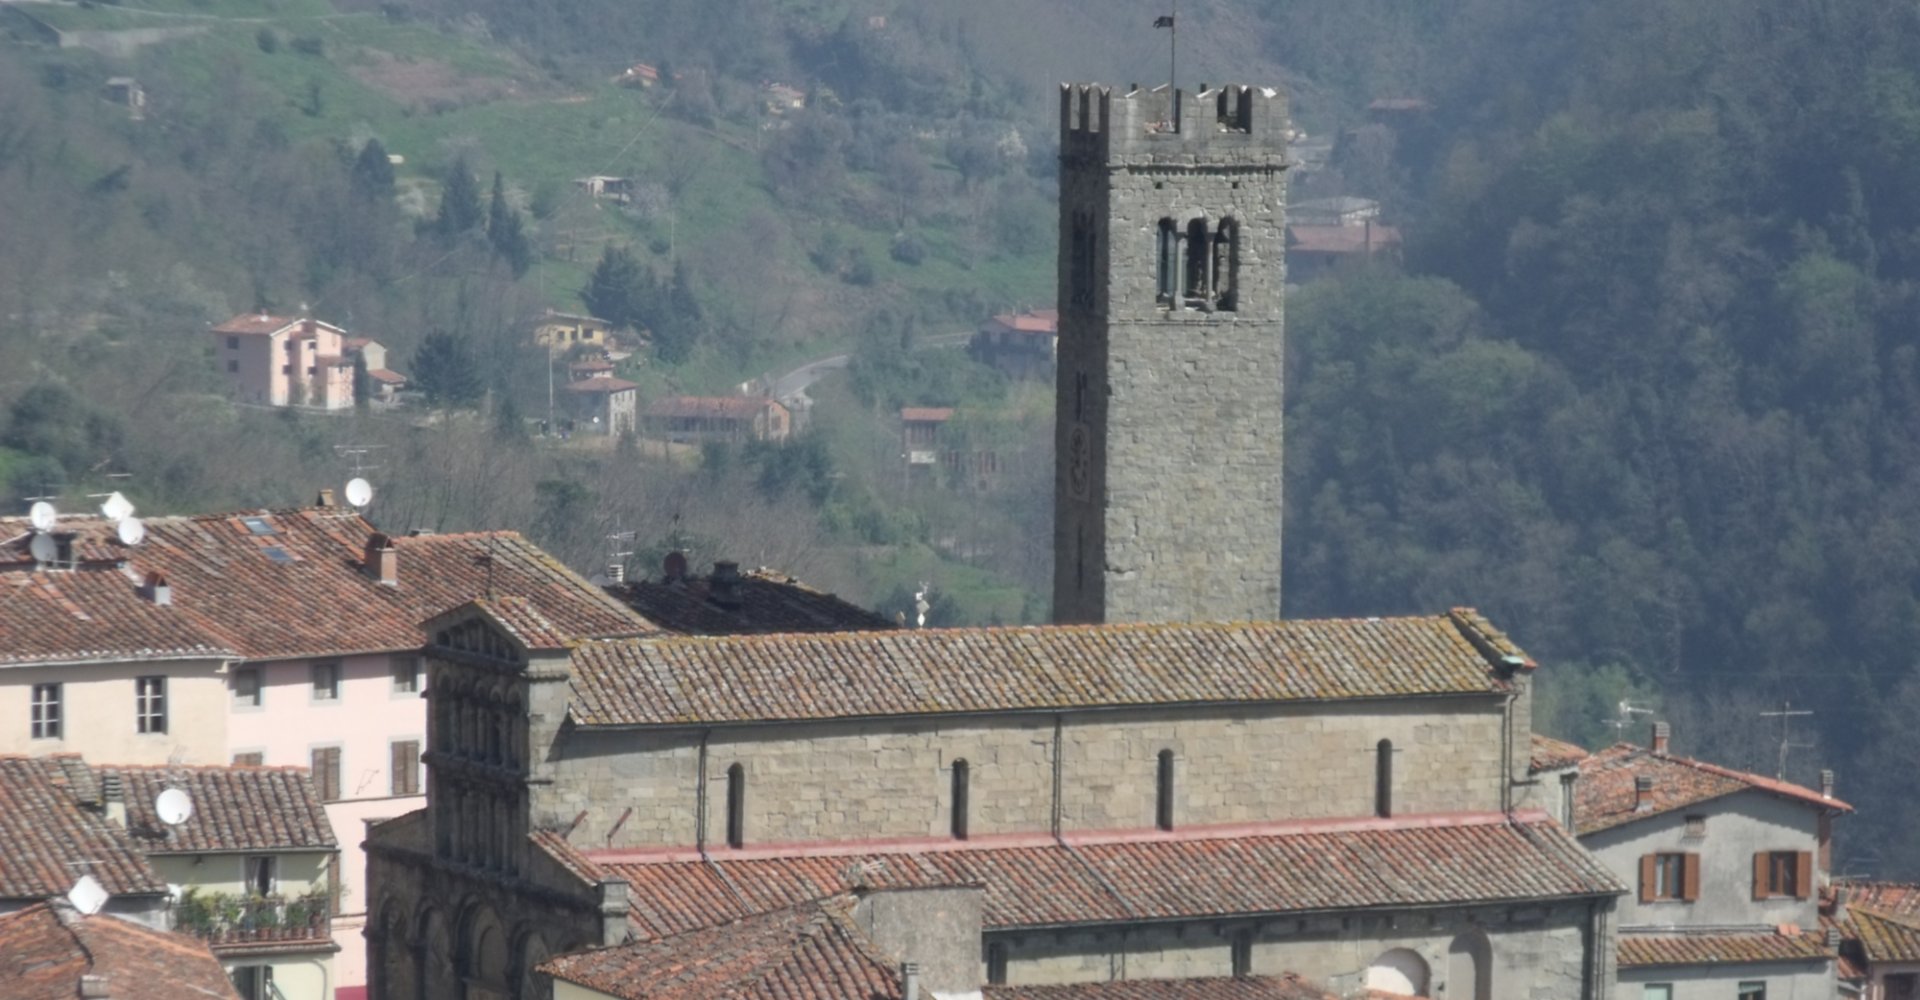 Villa Basilica Pieve Santa Maria Assunta